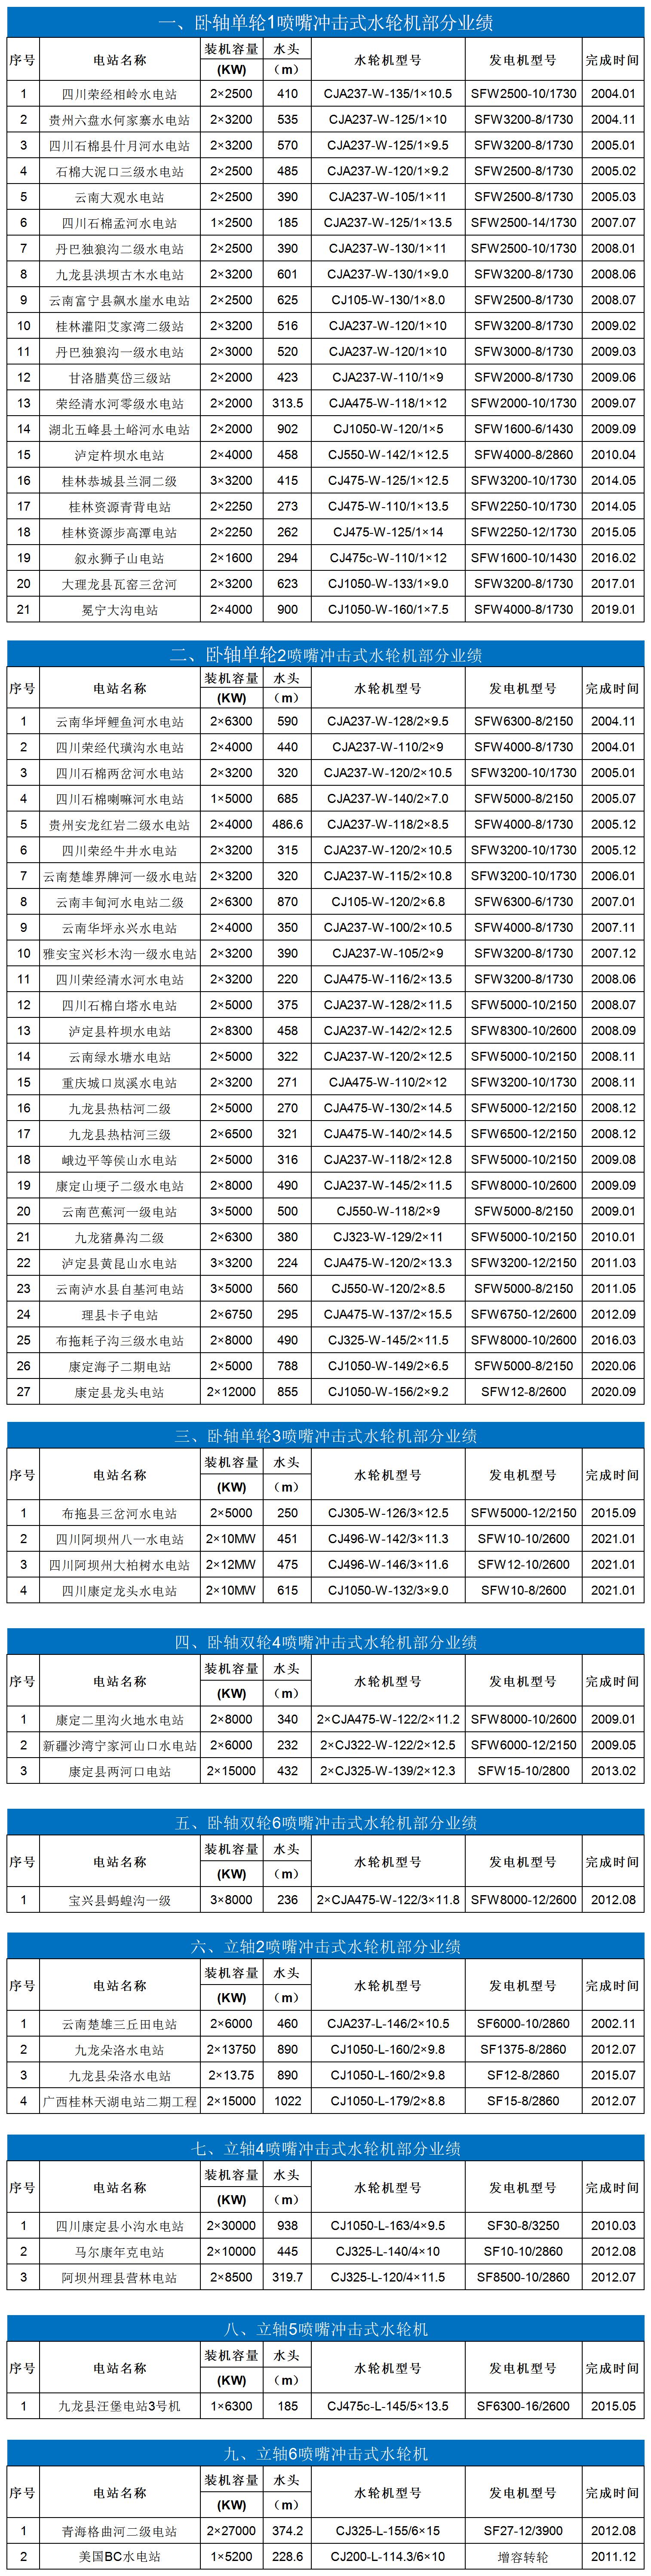 业绩表-冲击式-中文.jpg